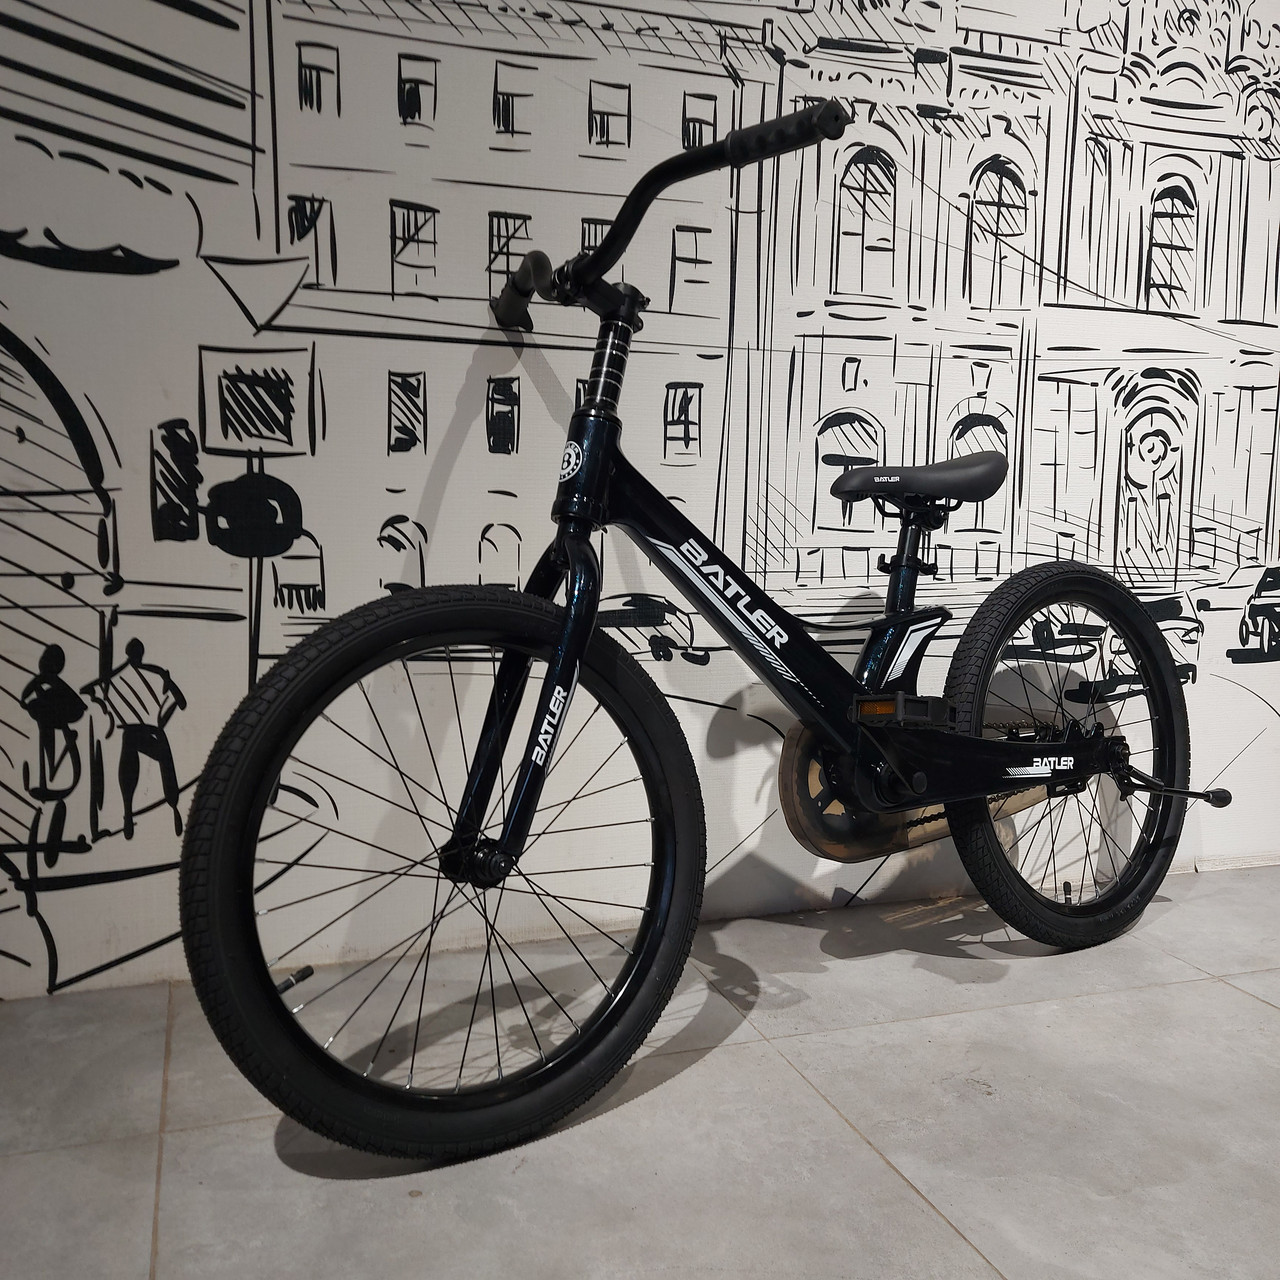 Детский двухколесный алюминиевый велосипед "Batler". 20" колеса. Легкий. Цвет - темно синий.